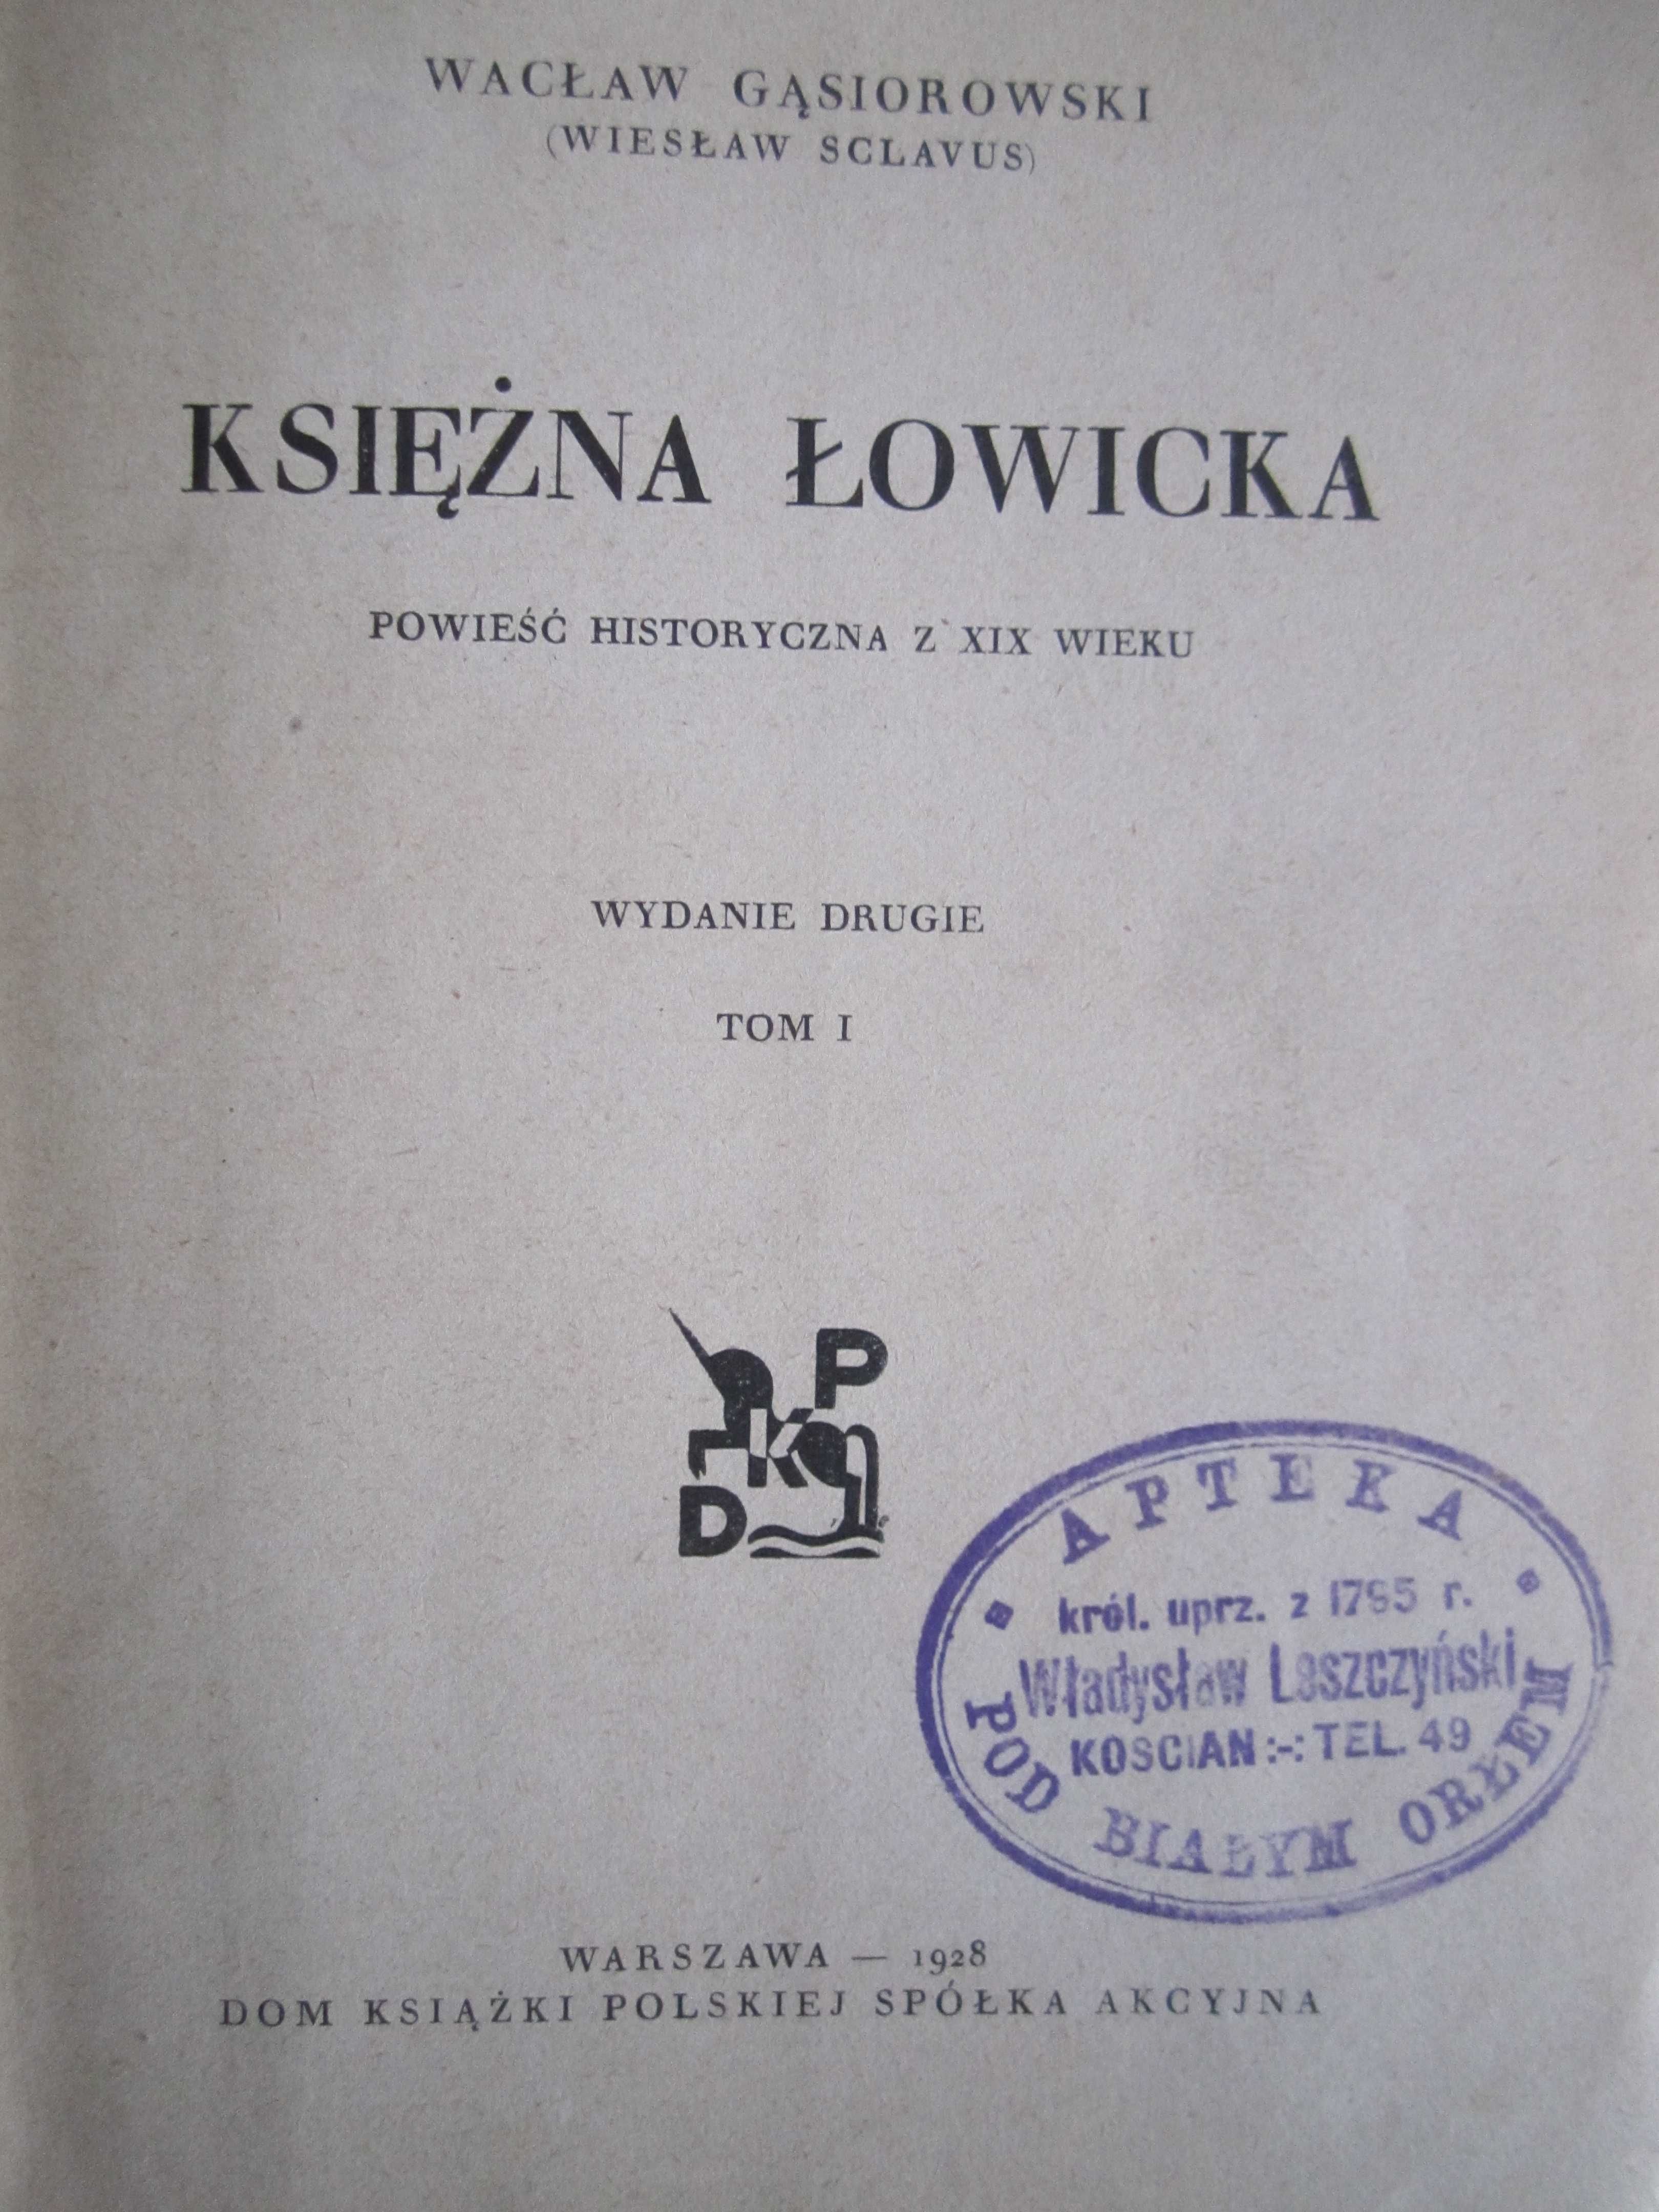 Książka "Księżna Łowicka" - Wacław Gąsiorowski - 1928 rok.